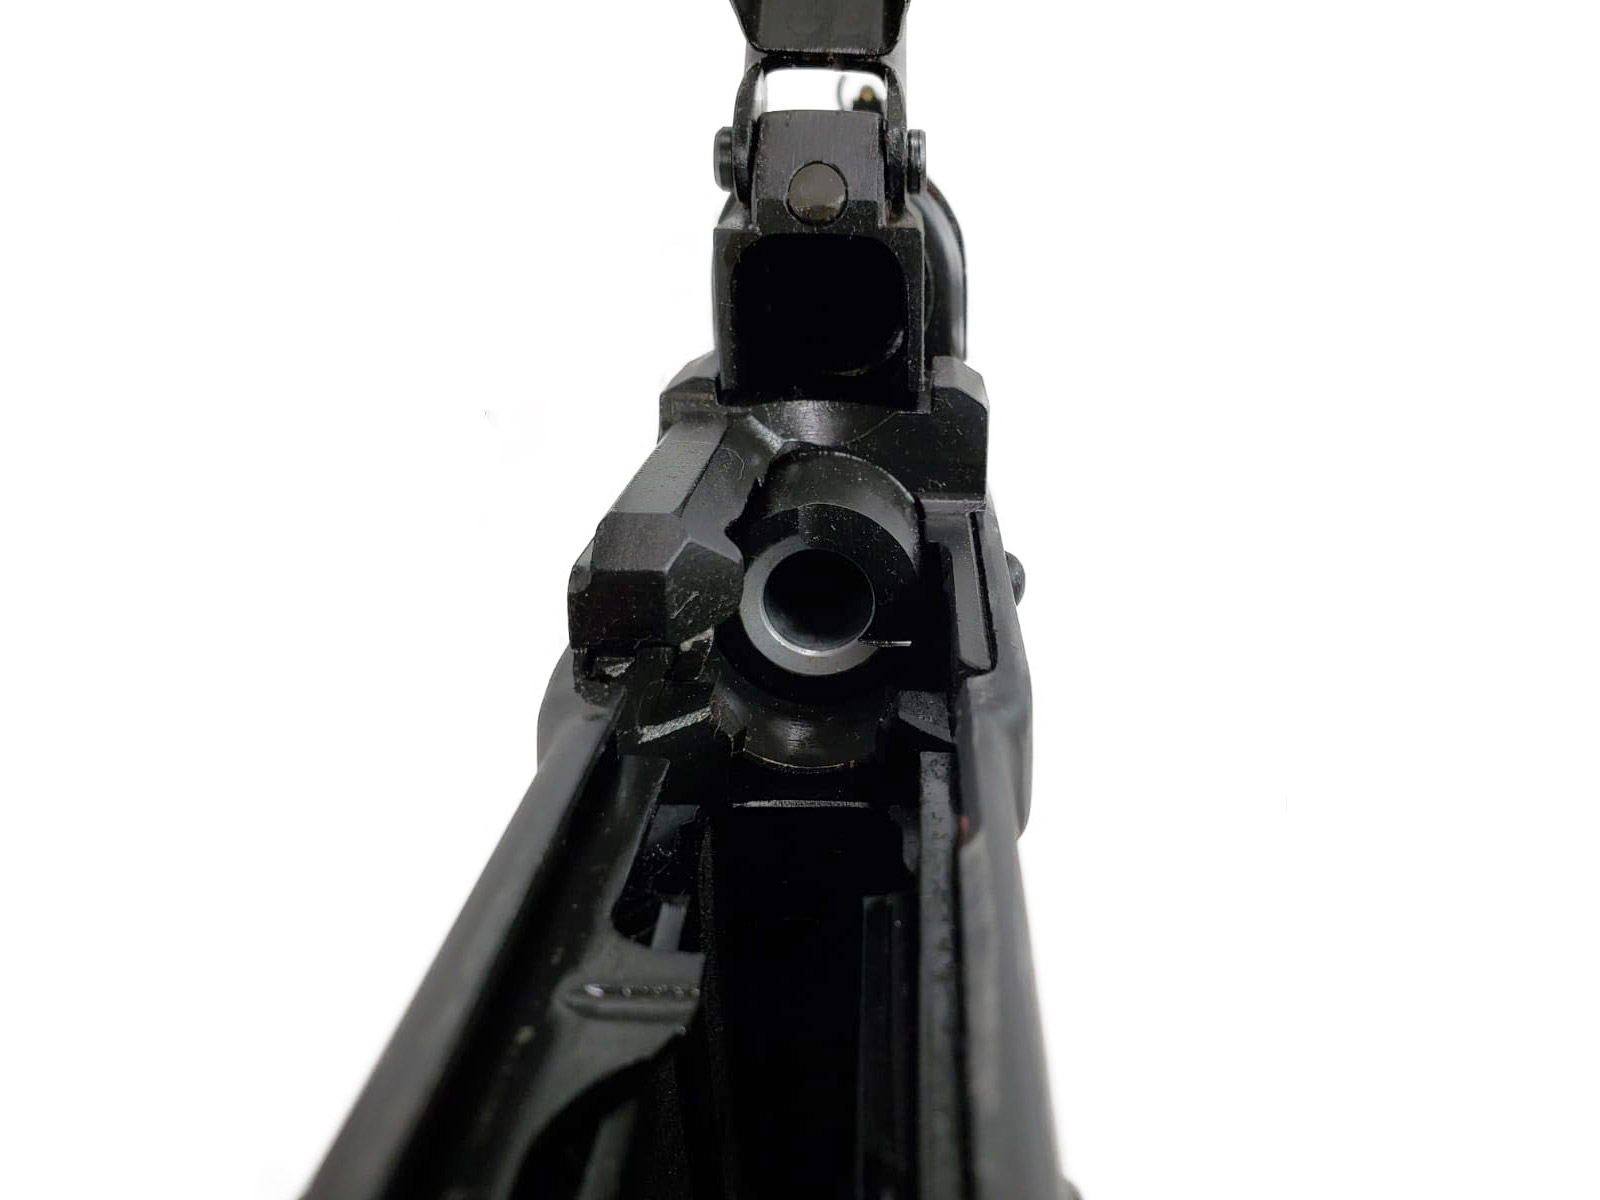 NEW ZPAP92 ak firearm chrome lined barrel view